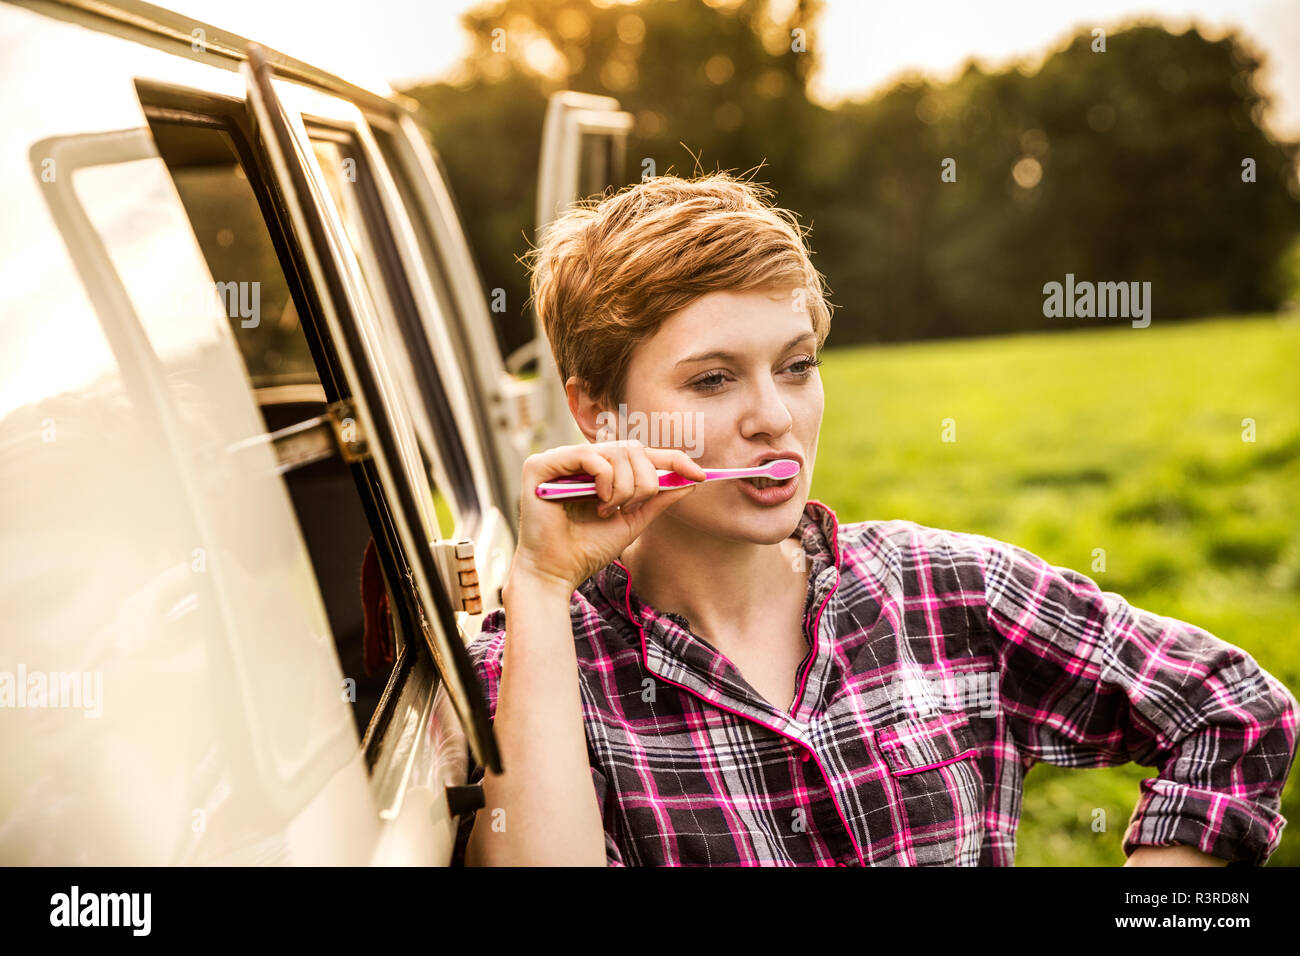 Woman in pyjama brushing teeth at a van in rural landscape Stock Photo